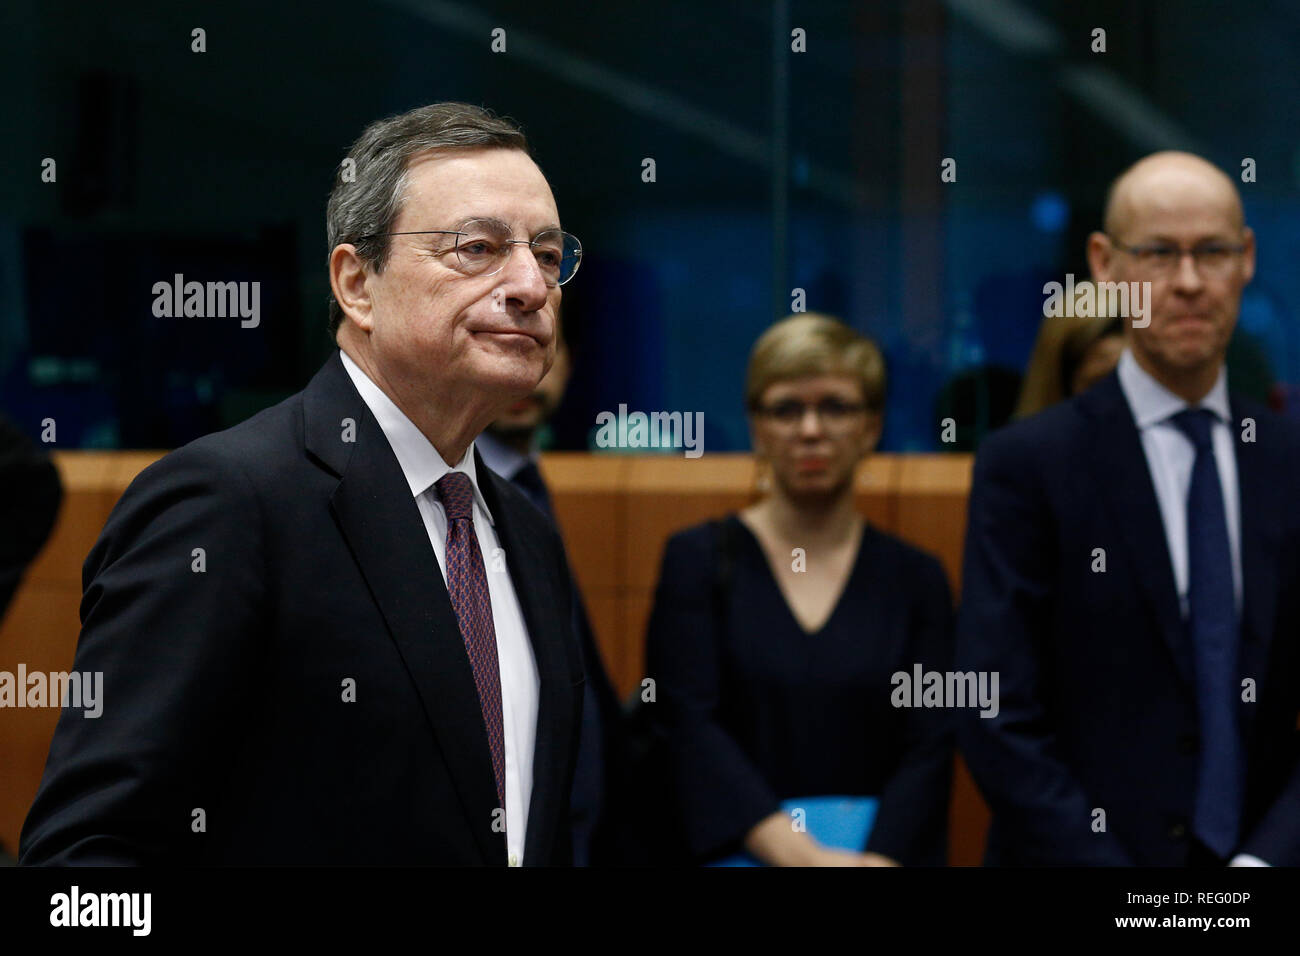 Bruxelles, Belgique. 21 janvier 2019. Le président de la Banque centrale européenne, Mario Draghi se présente à la réunion des ministres des finances de l'Eurogroupe au siège de l'UE. Alexandros Michailidis/Alamy Live News Banque D'Images